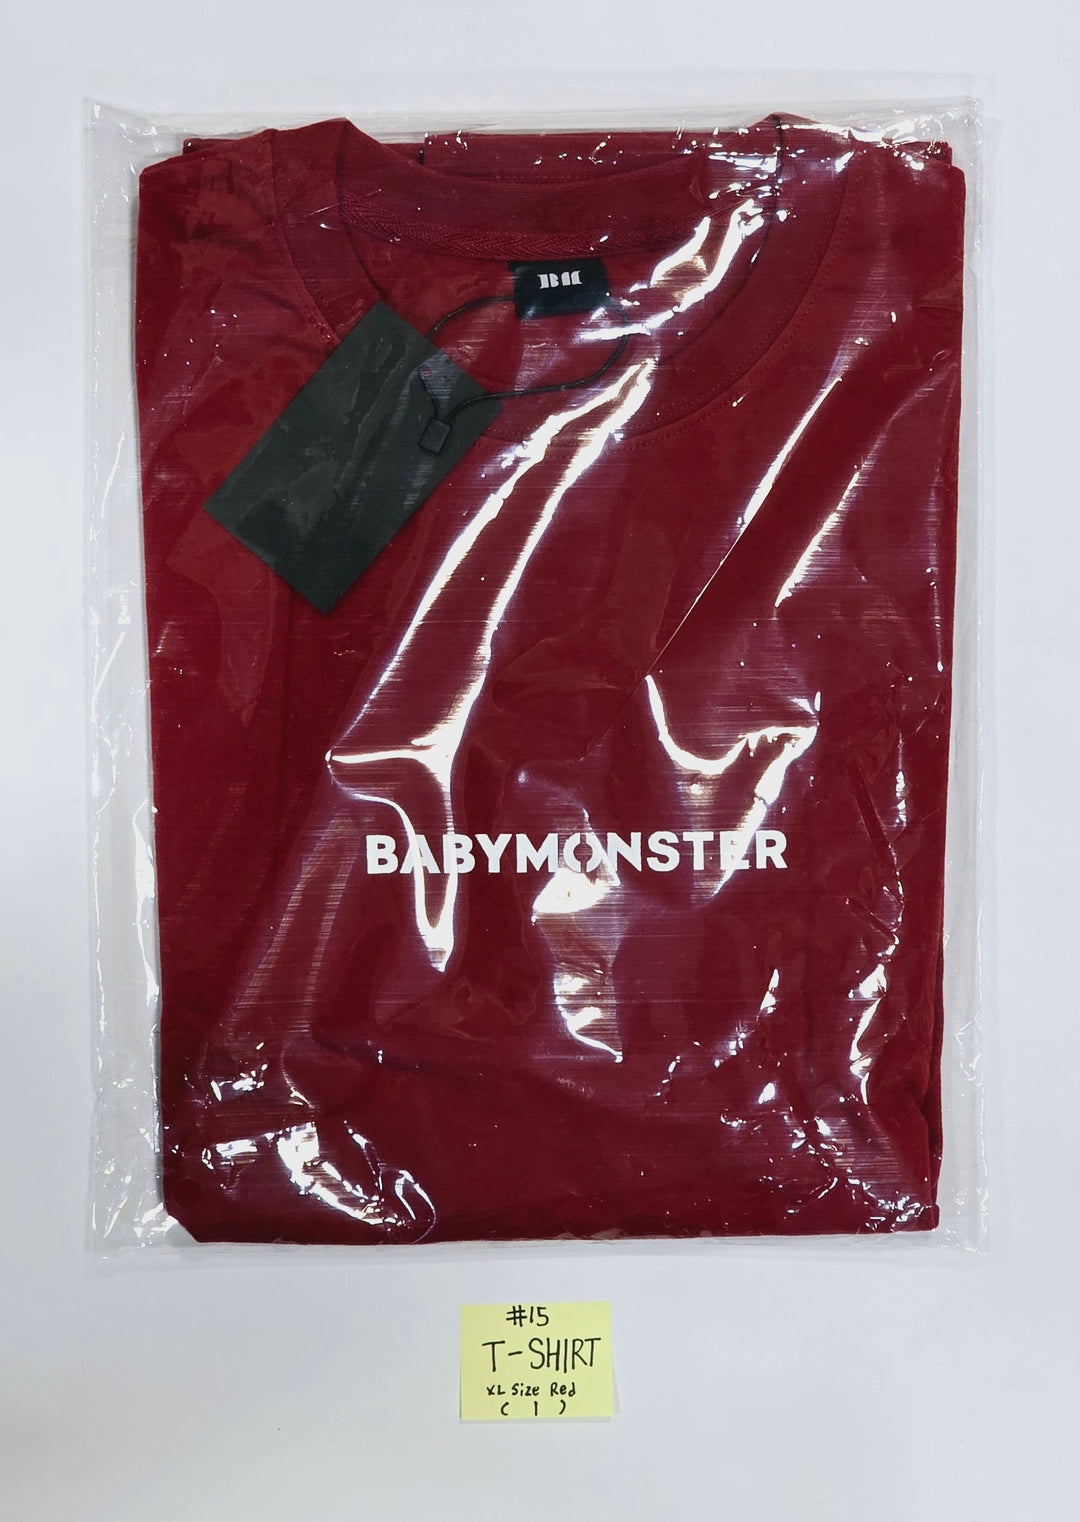 BABYMONSTER - "BABYMONS7ER" Pop-Up Store MD (Photocard Holder, Horn BallCap, T-Shirt, Hoodie) [24.4.1] (Restocked 4/8)